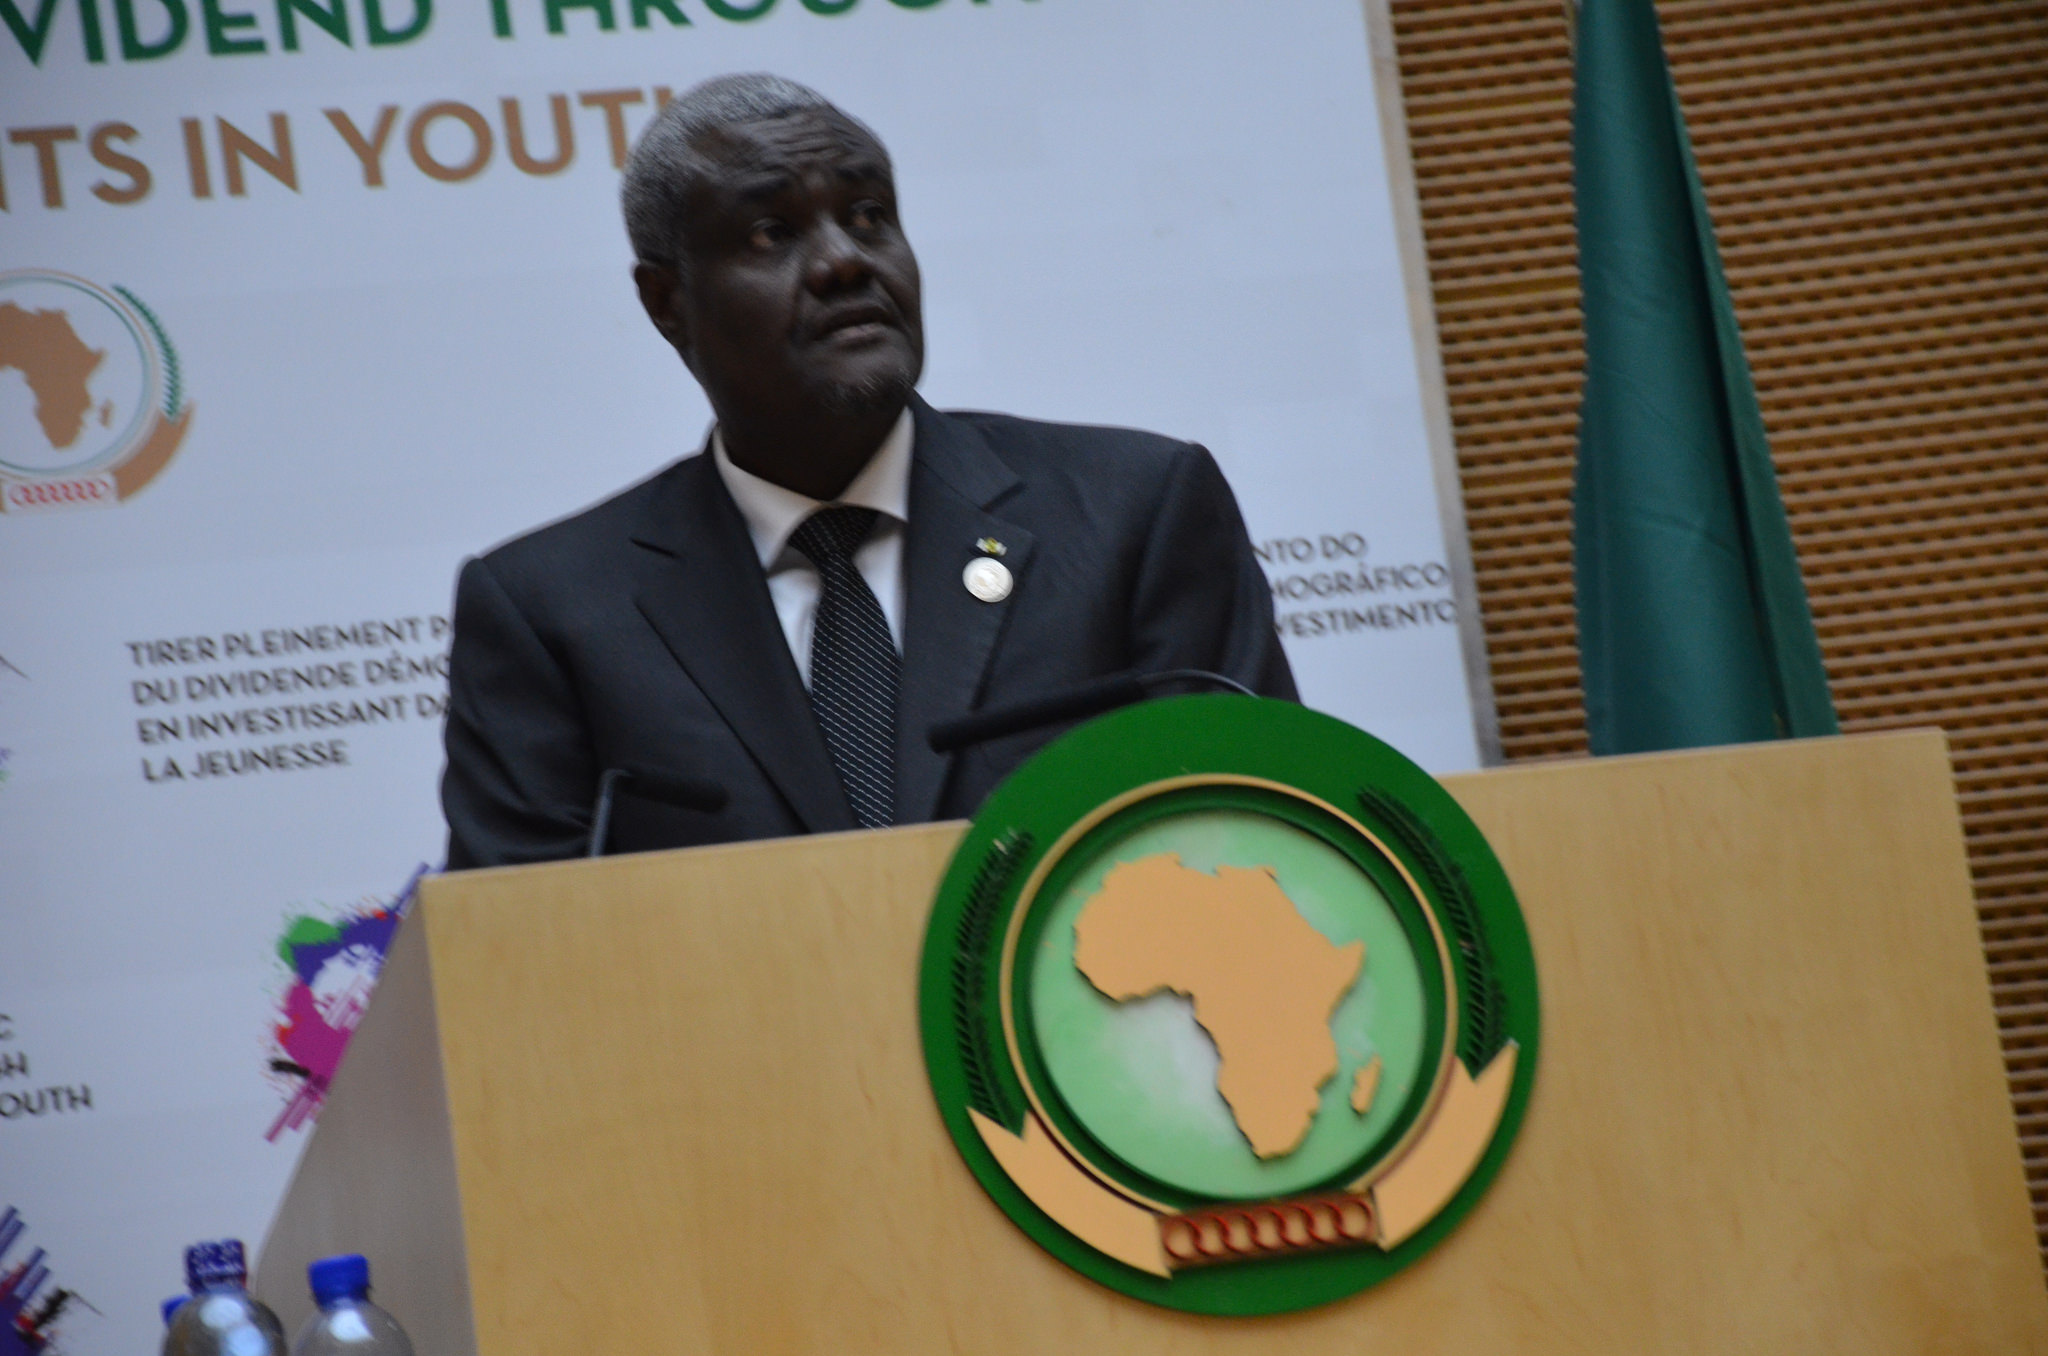 L’Union africaine suspend le Mali jusqu’au rétablissement de l’ordre constitutionnel dans le pays